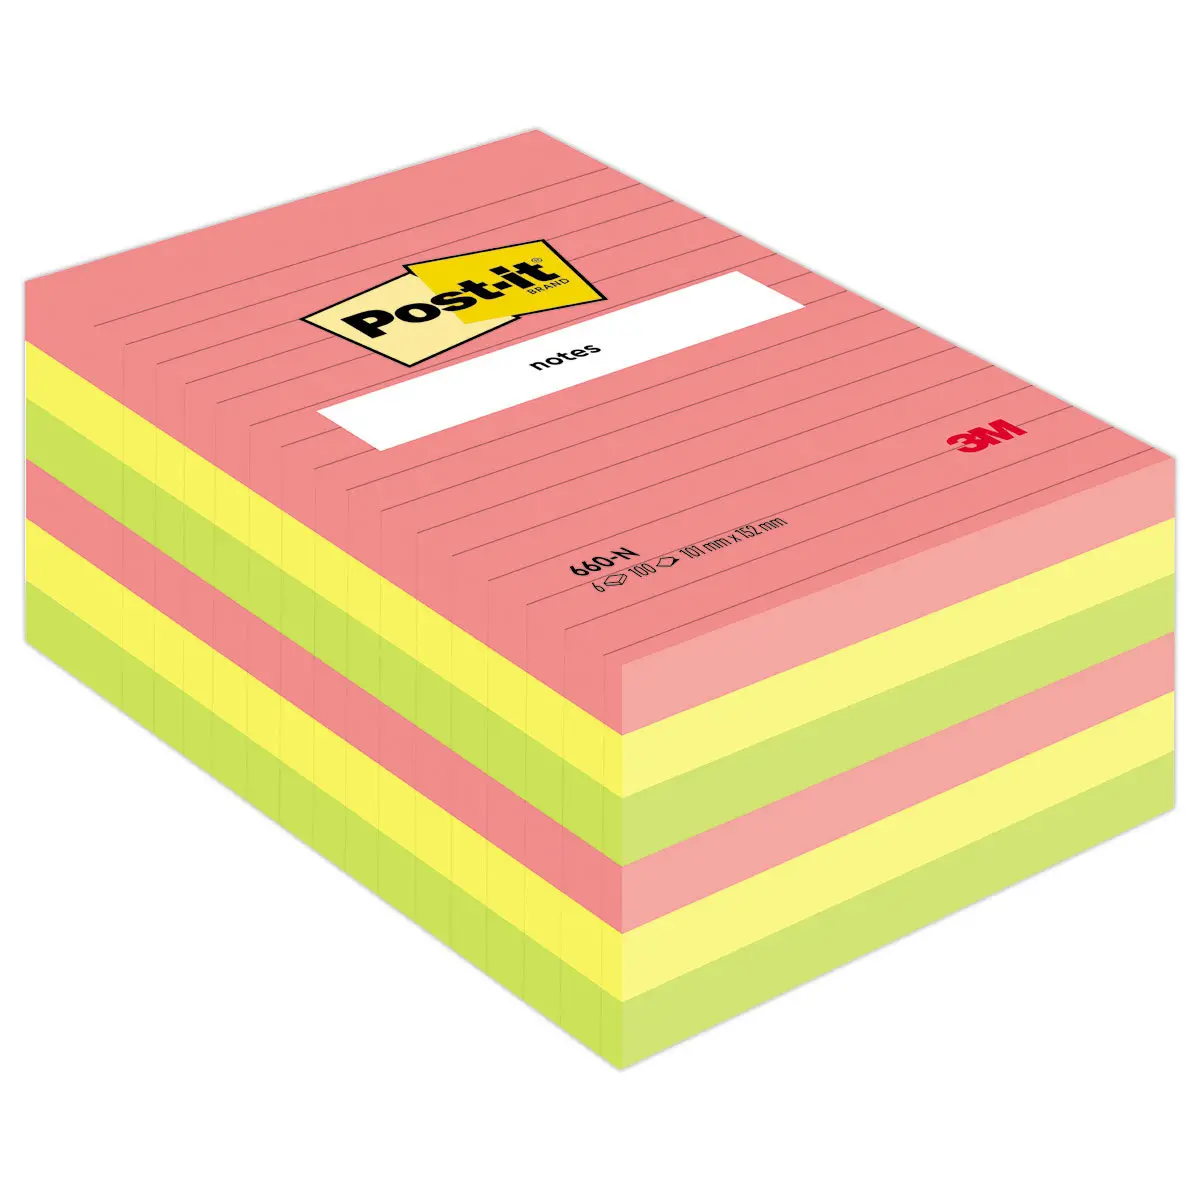 Post-It Notes jaunes quadrillées grand format 102 x 152mm - 100 feuilles -  Lot de 6 : : Fournitures de bureau